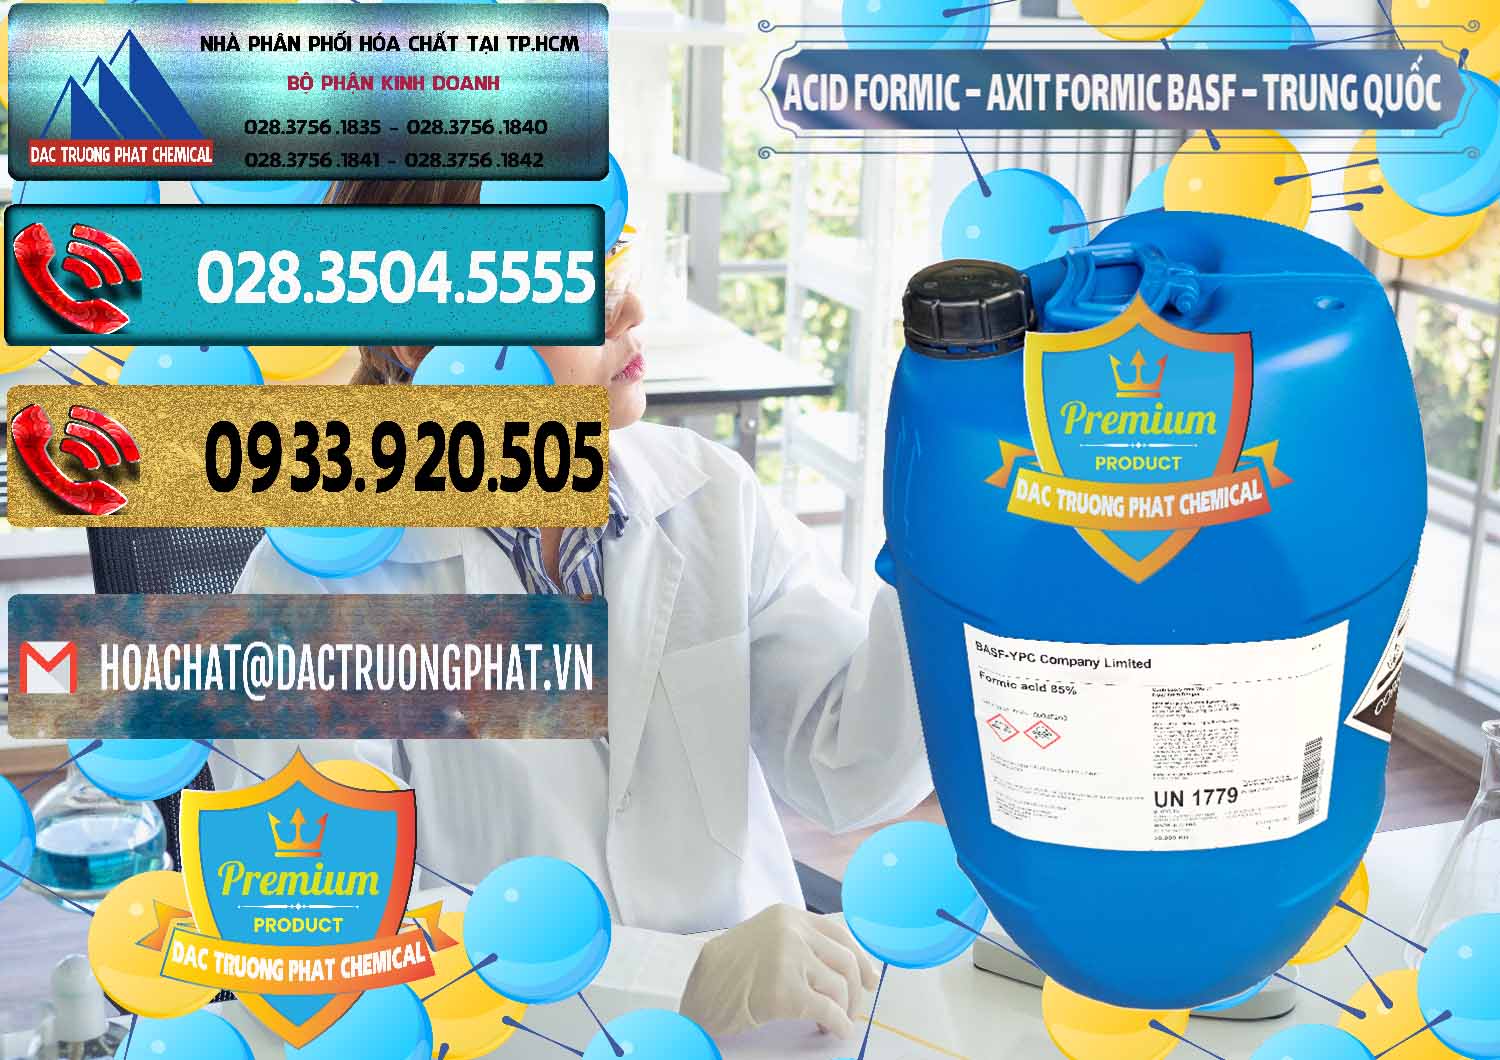 Nơi nhập khẩu - bán Acid Formic - Axit Formic BASF Trung Quốc China - 0025 - Nơi cung ứng & phân phối hóa chất tại TP.HCM - hoachatdetnhuom.com